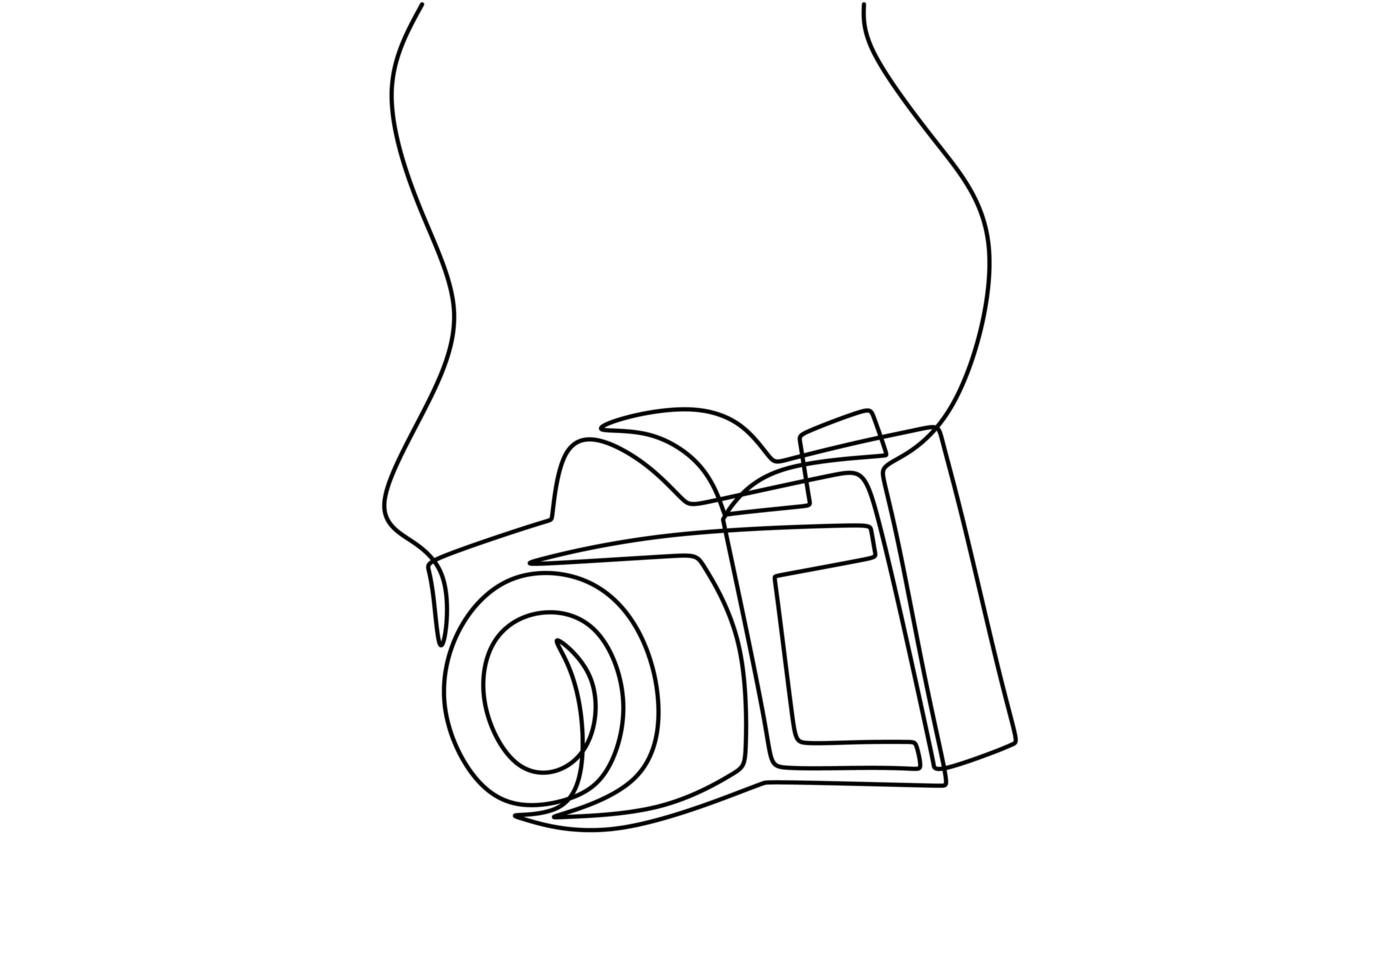 conception de caméra en une ligne. Vecteur numérique de caméra DSLR avec style linéaire de minimalisme de dessin au trait continu unique. concept de matériel de photographie isolé sur fond blanc vector illustration de conception